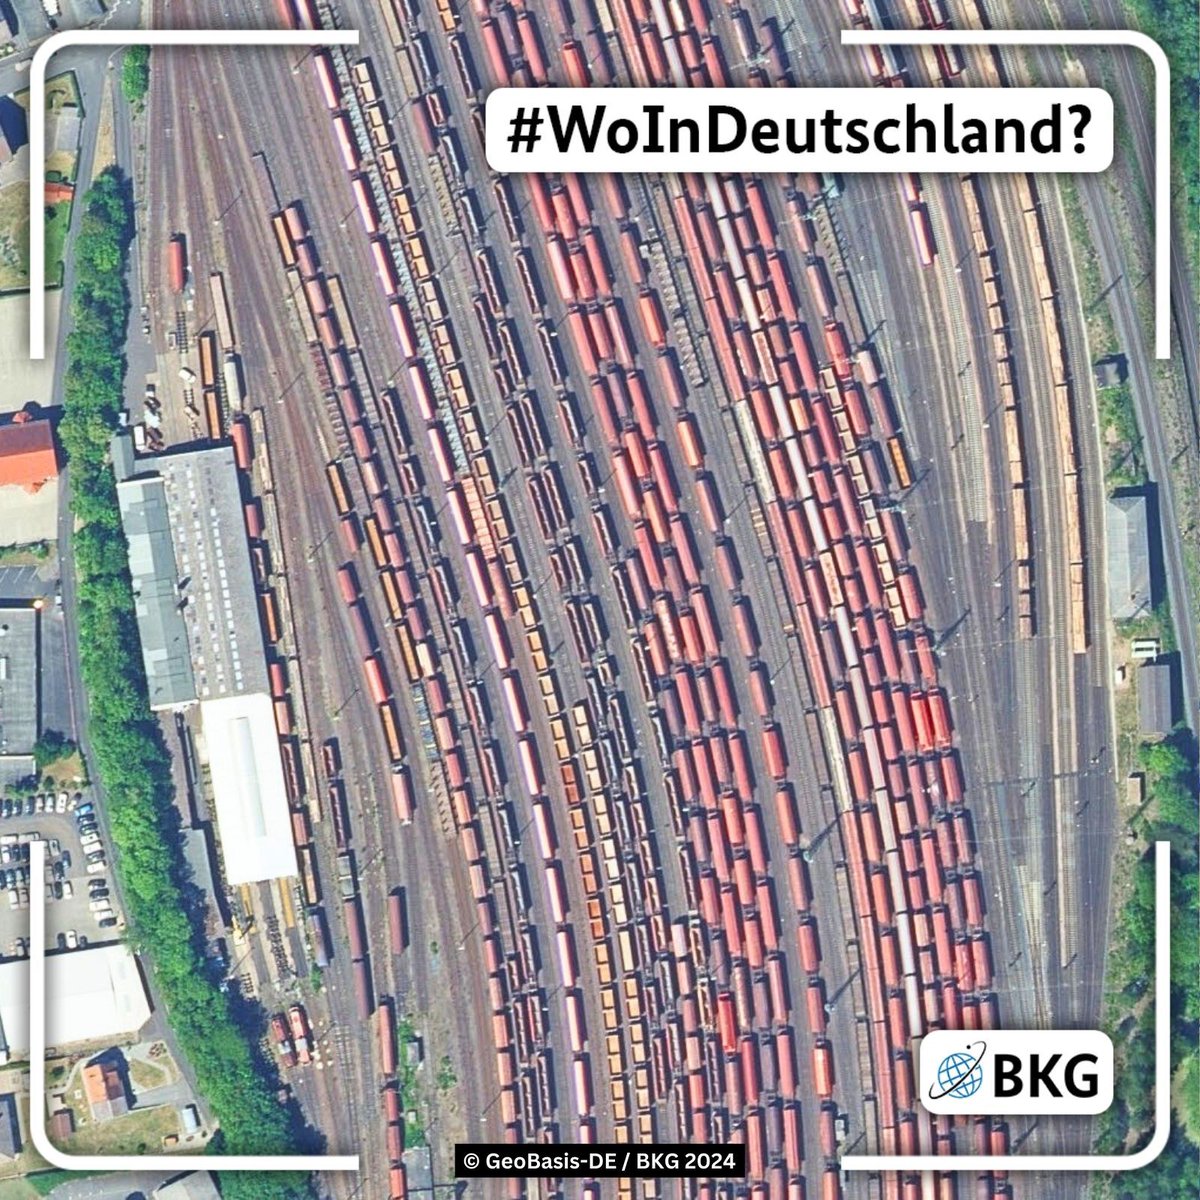 🌉Letzte Woche hatten wir die Kanalbrücke Magdeburg im Fokus. #WoInDeutschland sind wir heute? 🤔